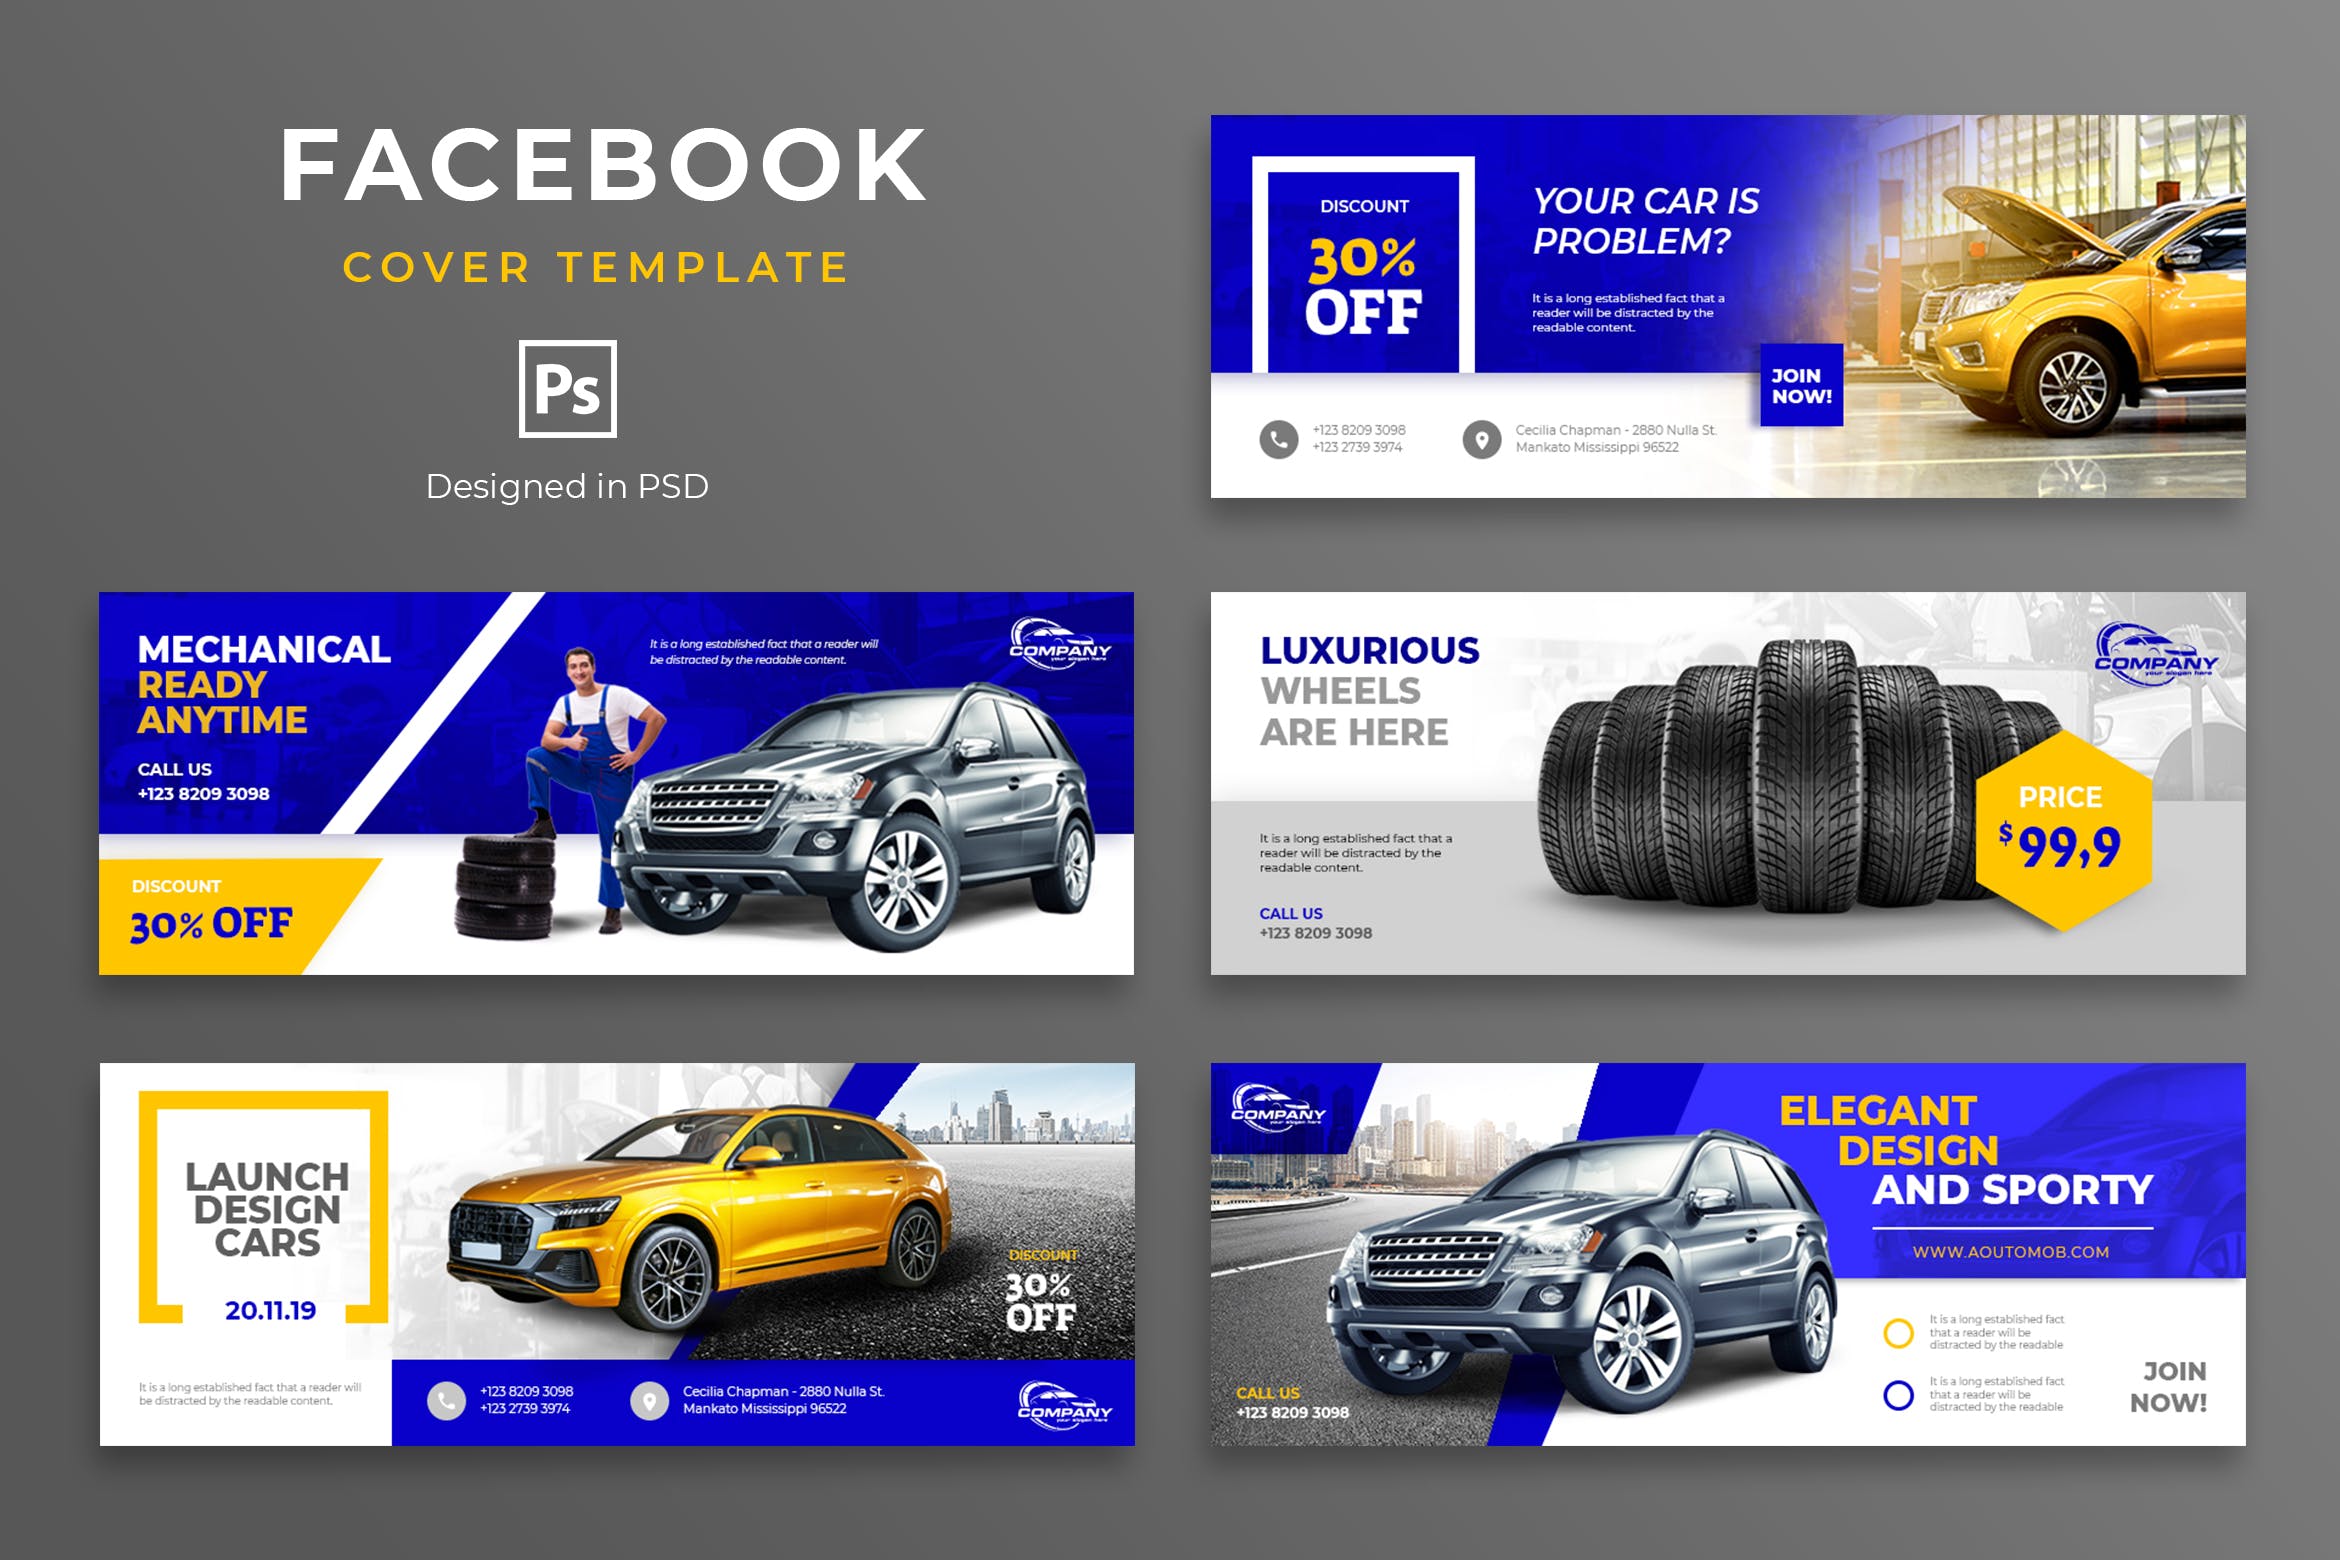 汽车品牌Facebook营销推广主页封面设计模板16图库精选 Automotive Facebook Cover Template插图